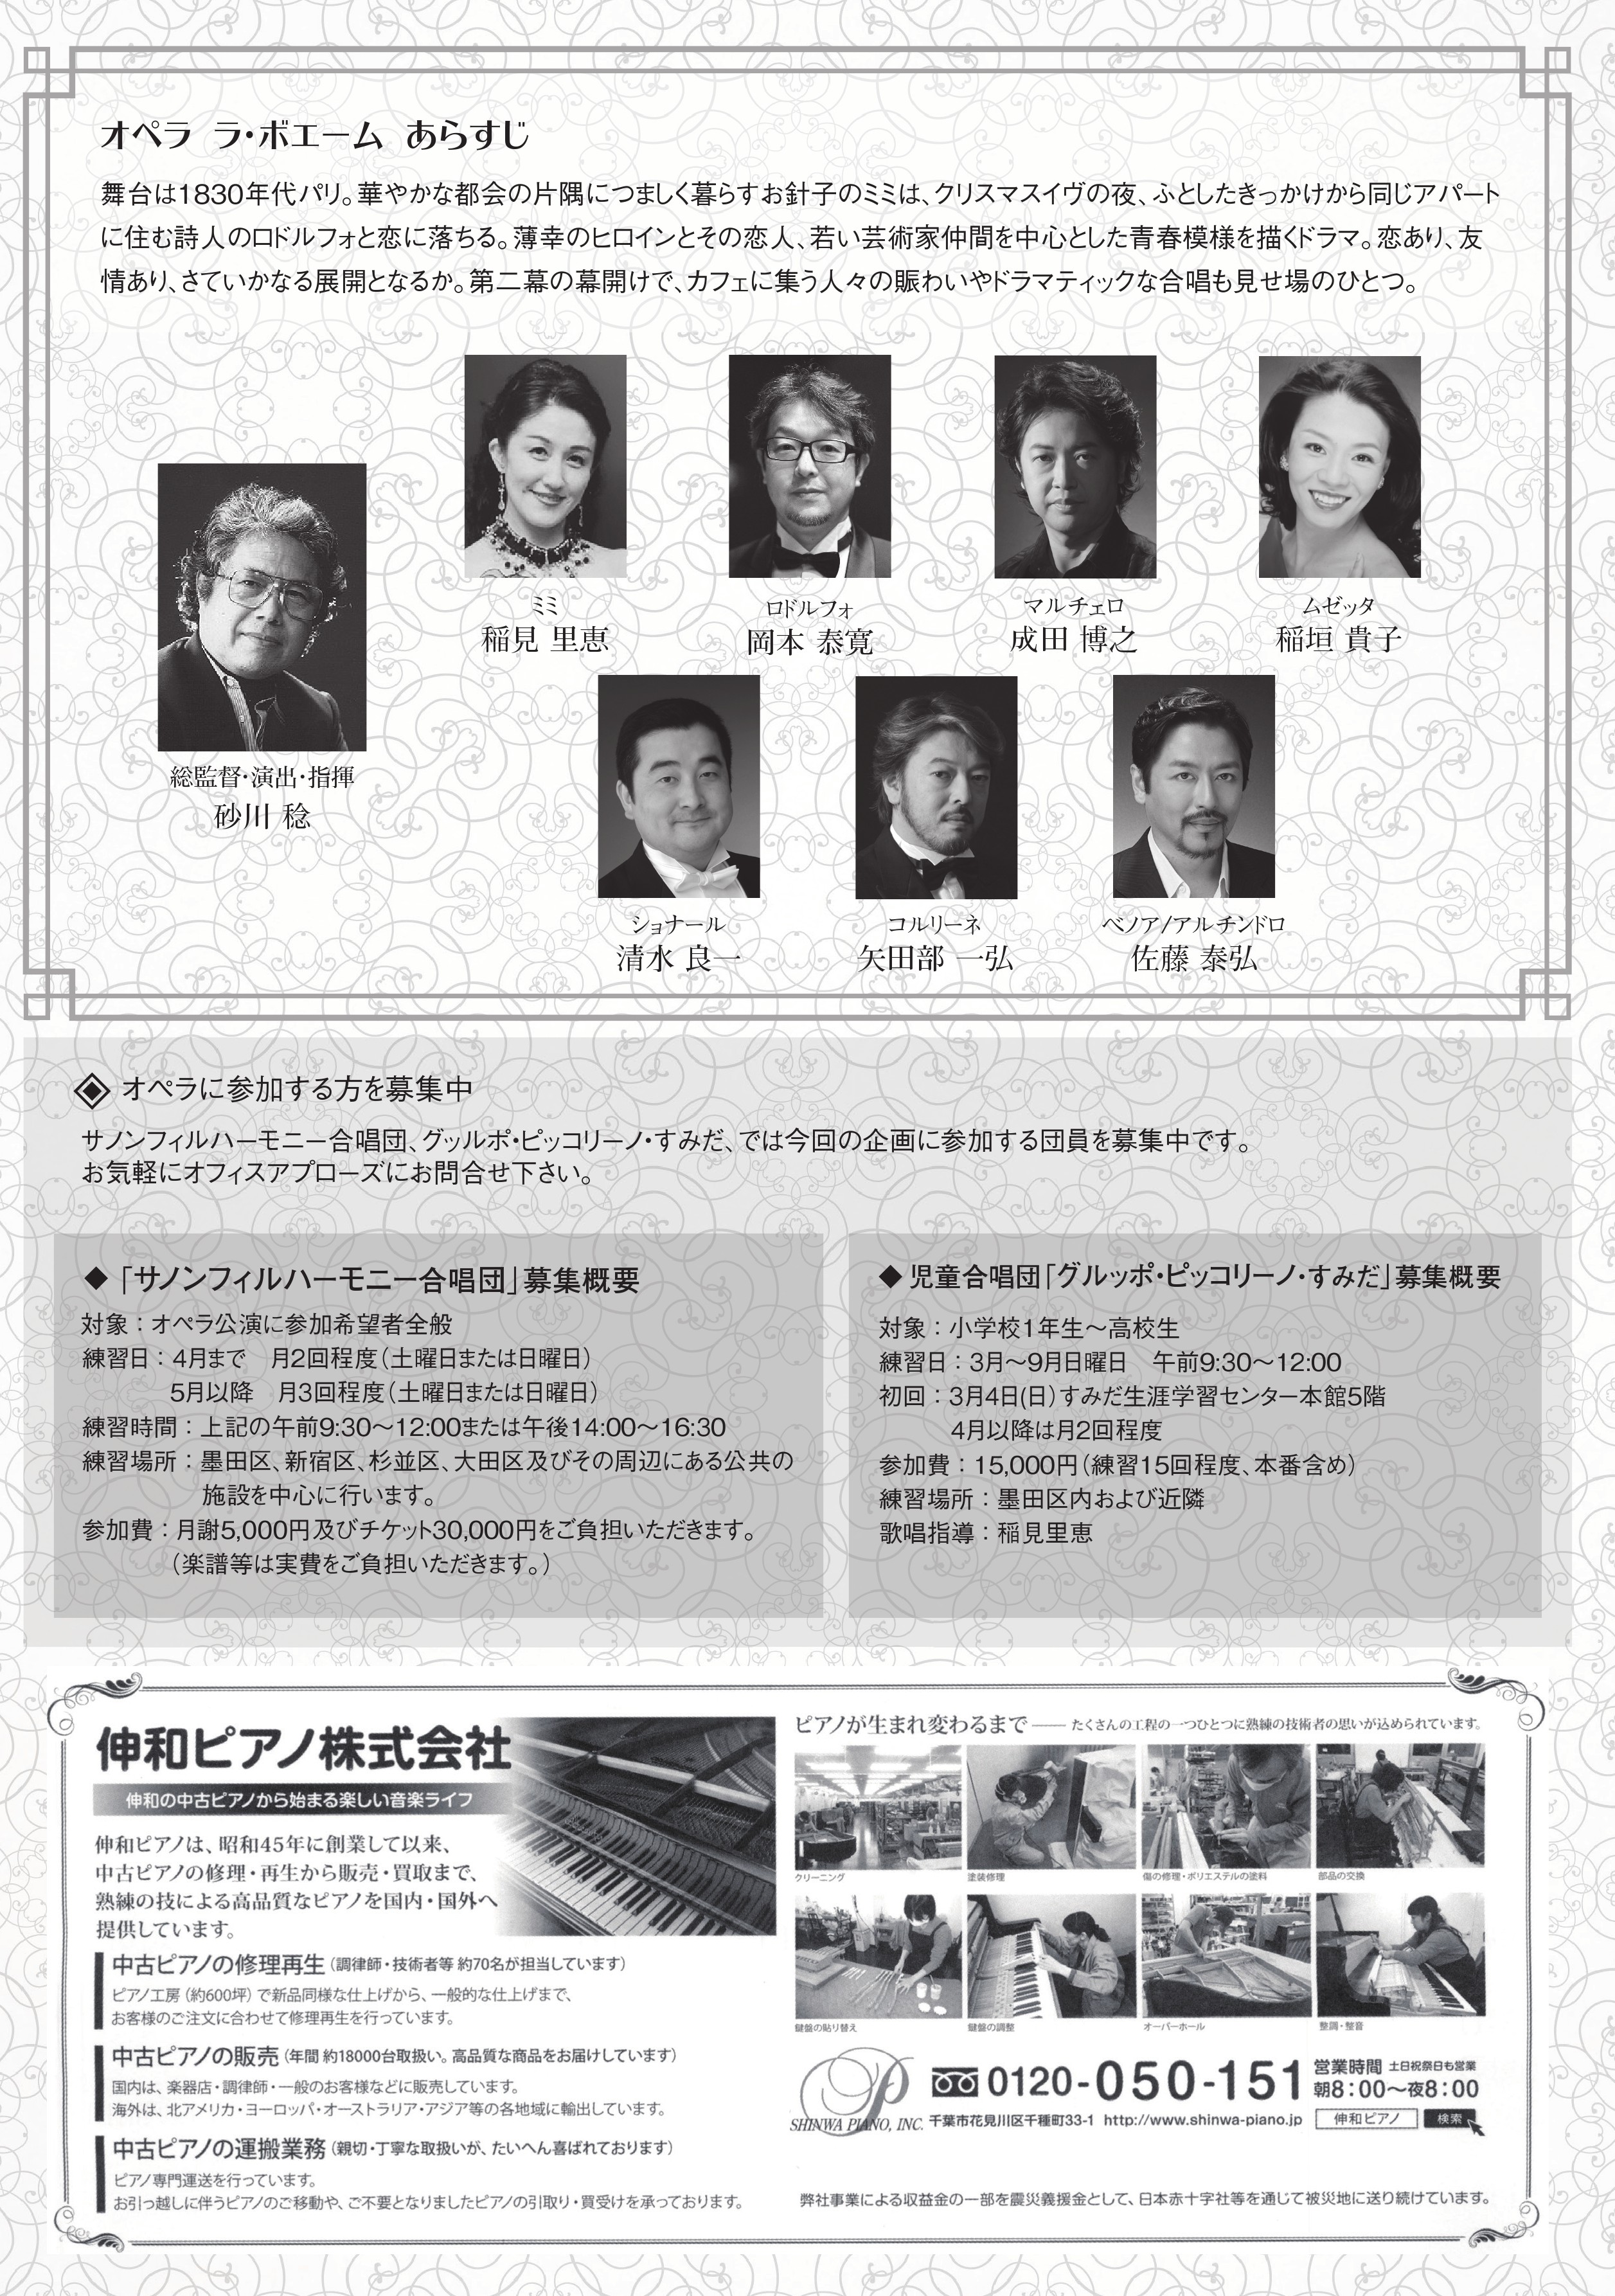 18年9月9日 日 M Sanagawa米寿記念コンサート プッチーニ作曲 オペラ ラ ボエーム 東邦音楽大学